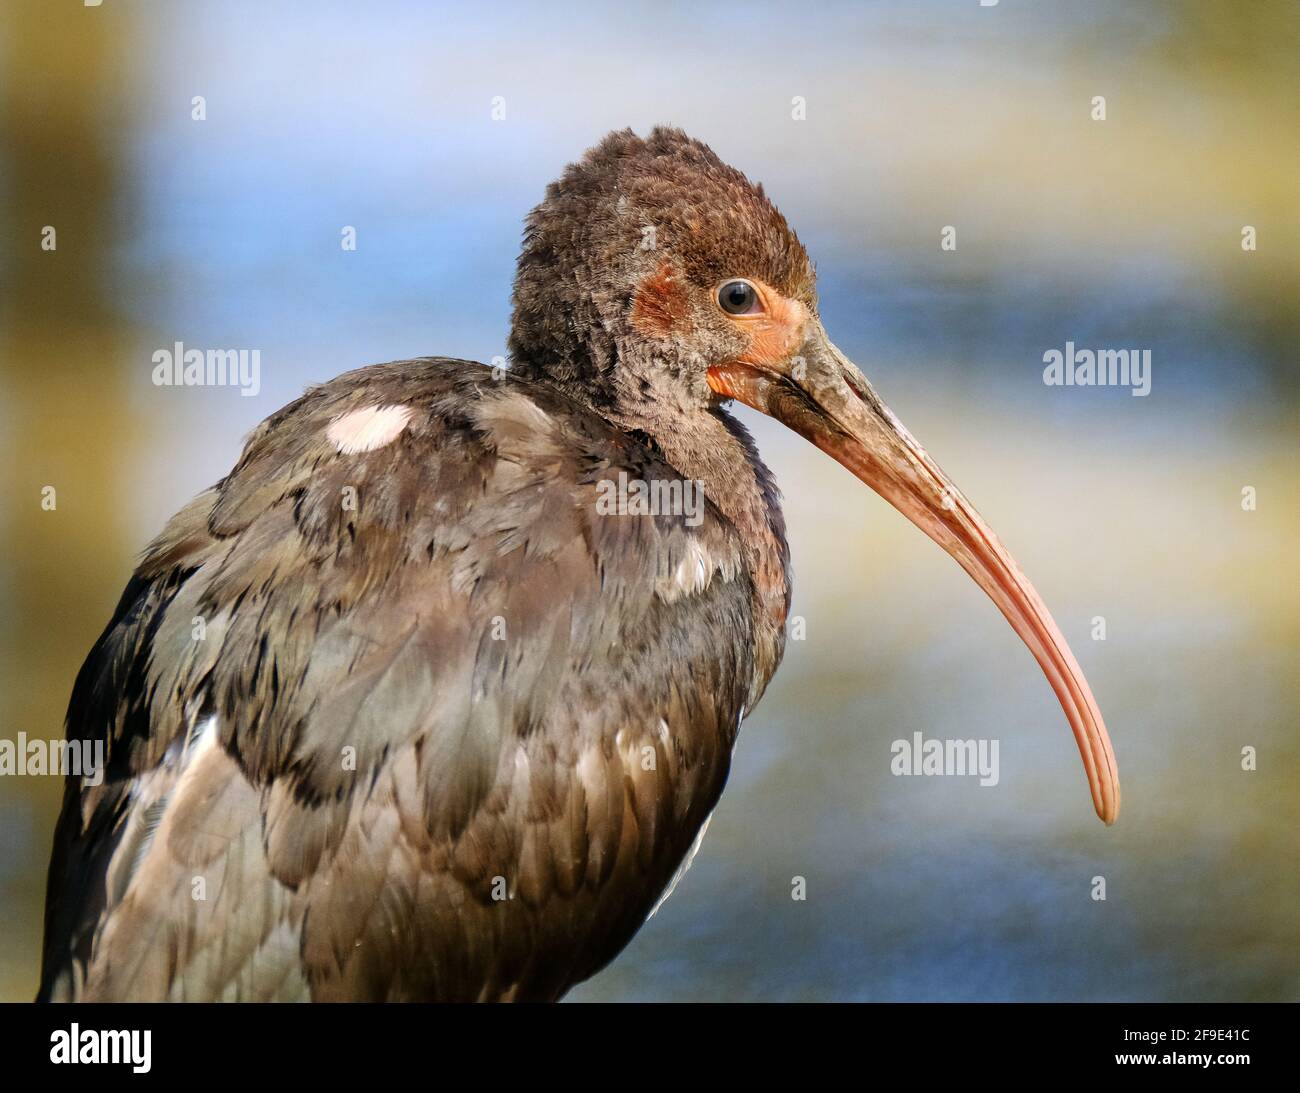 Le scarlet ibis est une espèce d'ibis de la famille des oiseaux Threskiornithidae. Jeune oiseau. Banque D'Images